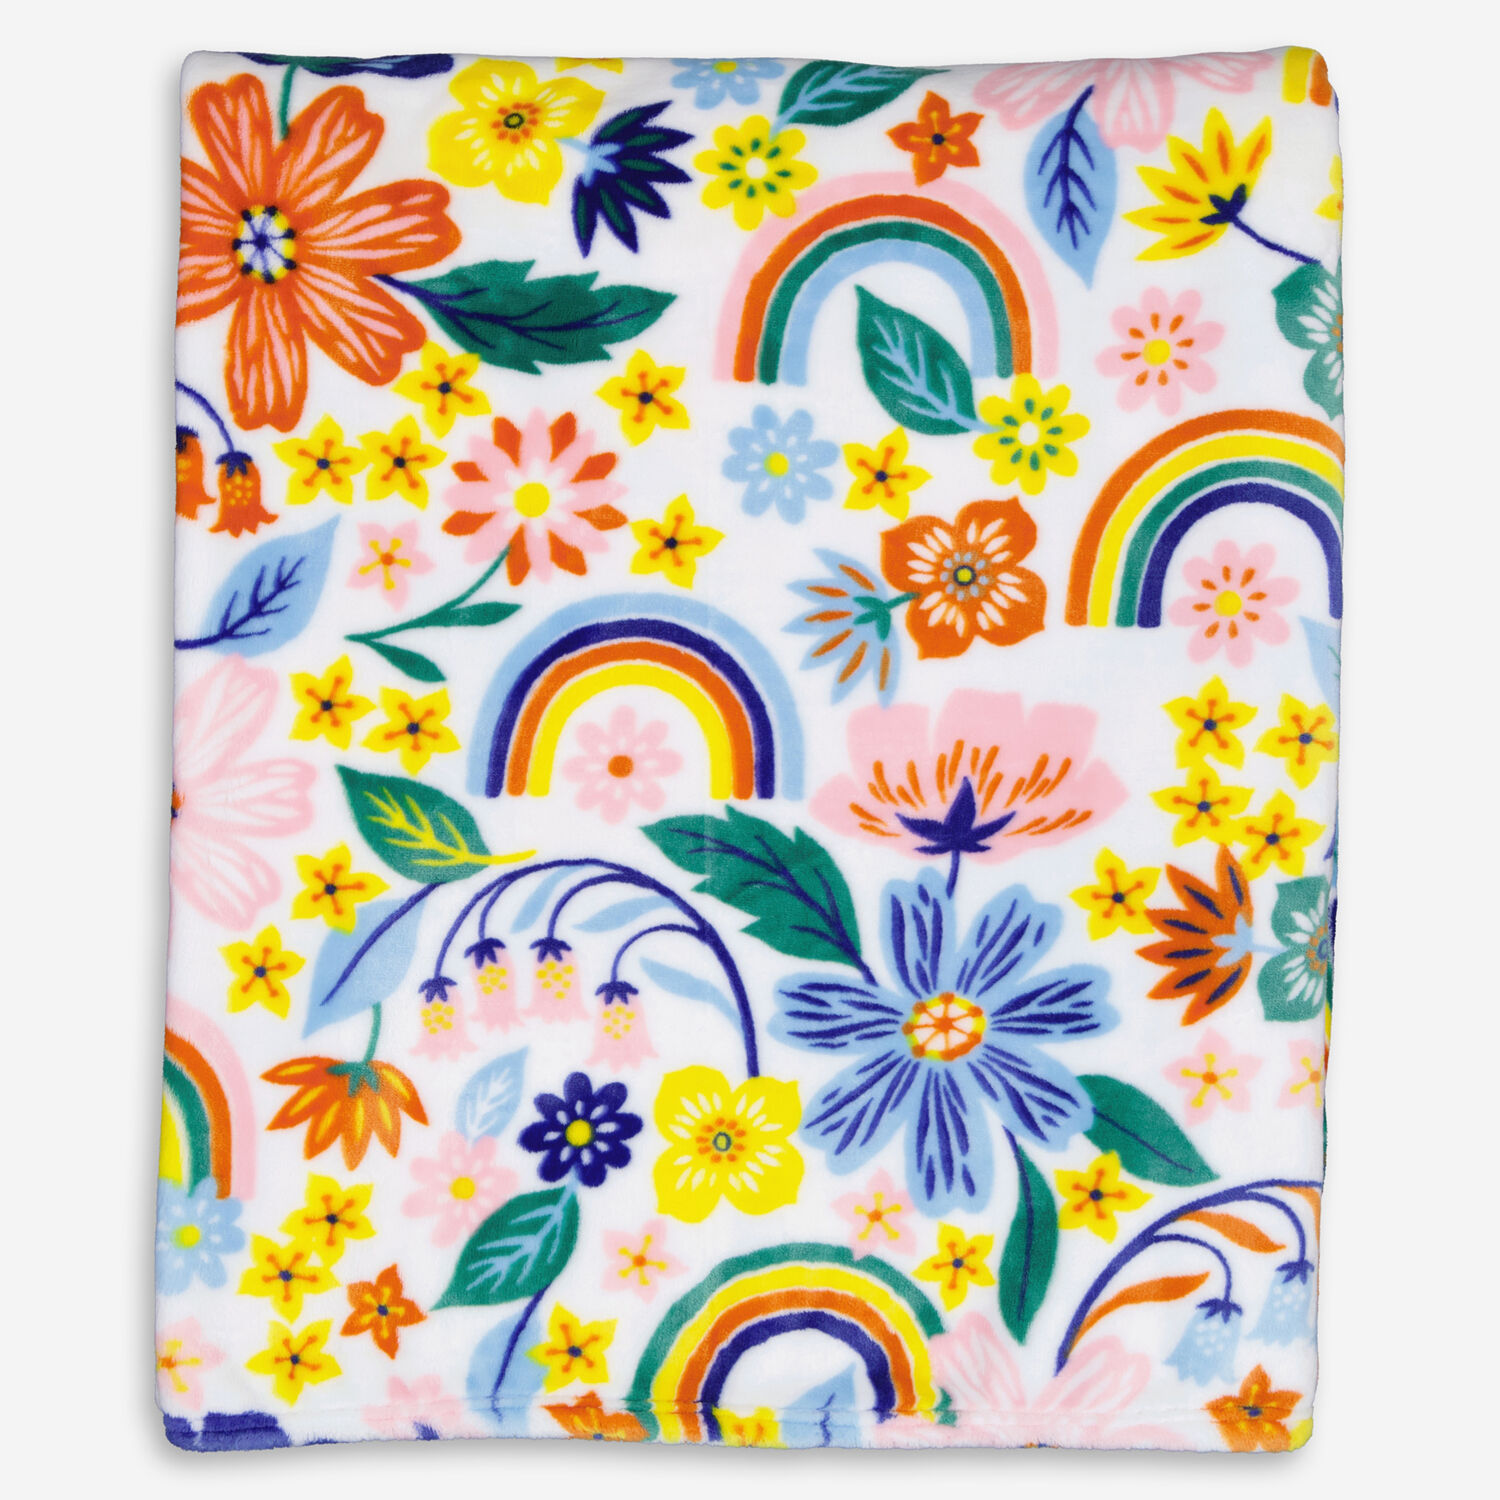 Плюшевое одеяло с разноцветным цветочным узором 152х178см Cupcakes & Cashmere